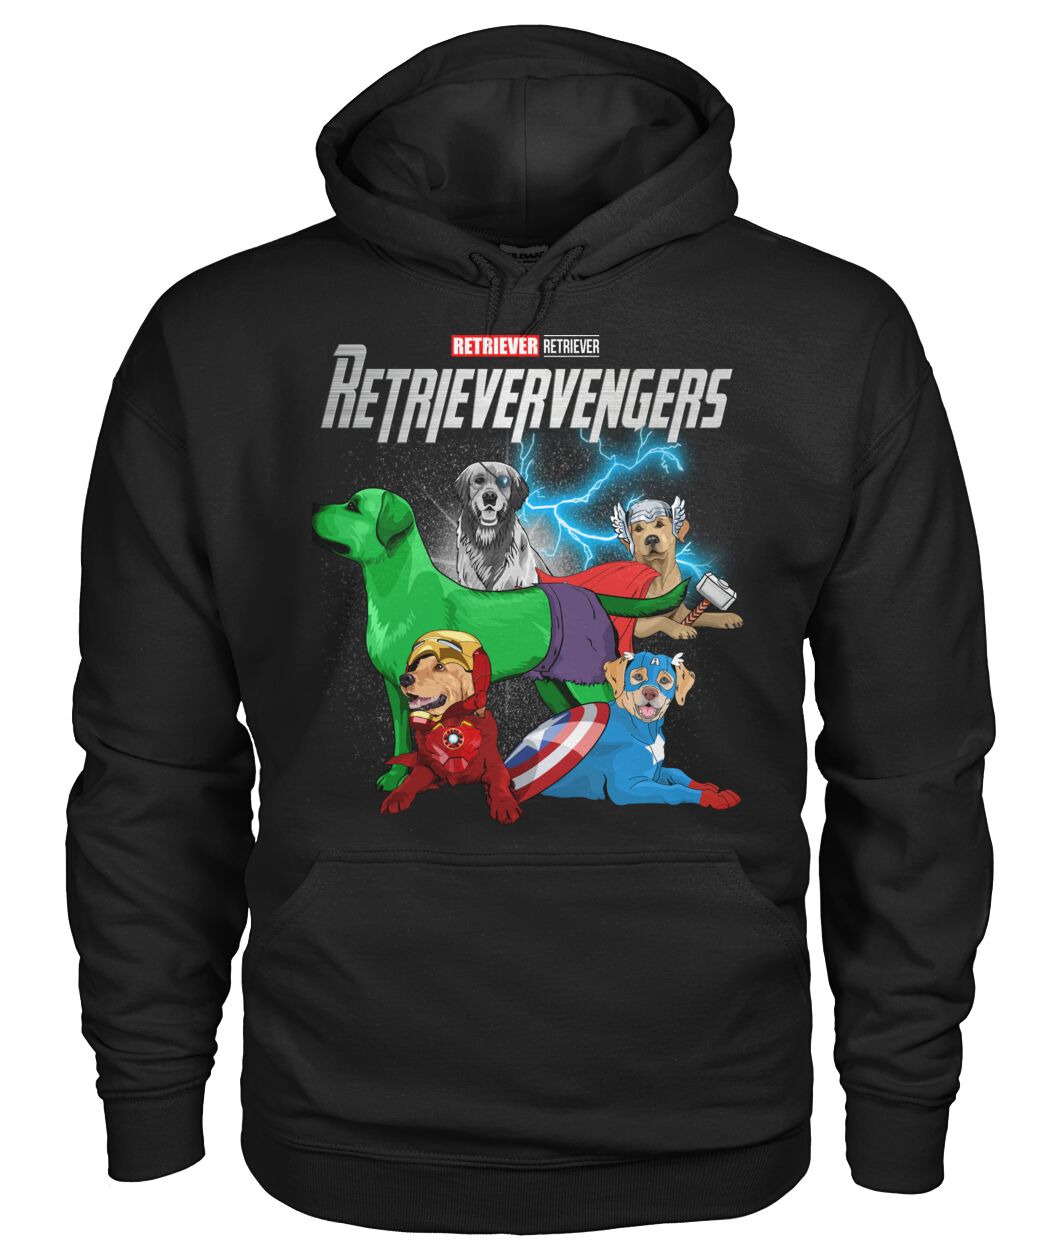 Retrievervengers 3D Hoodie, Shirt 18